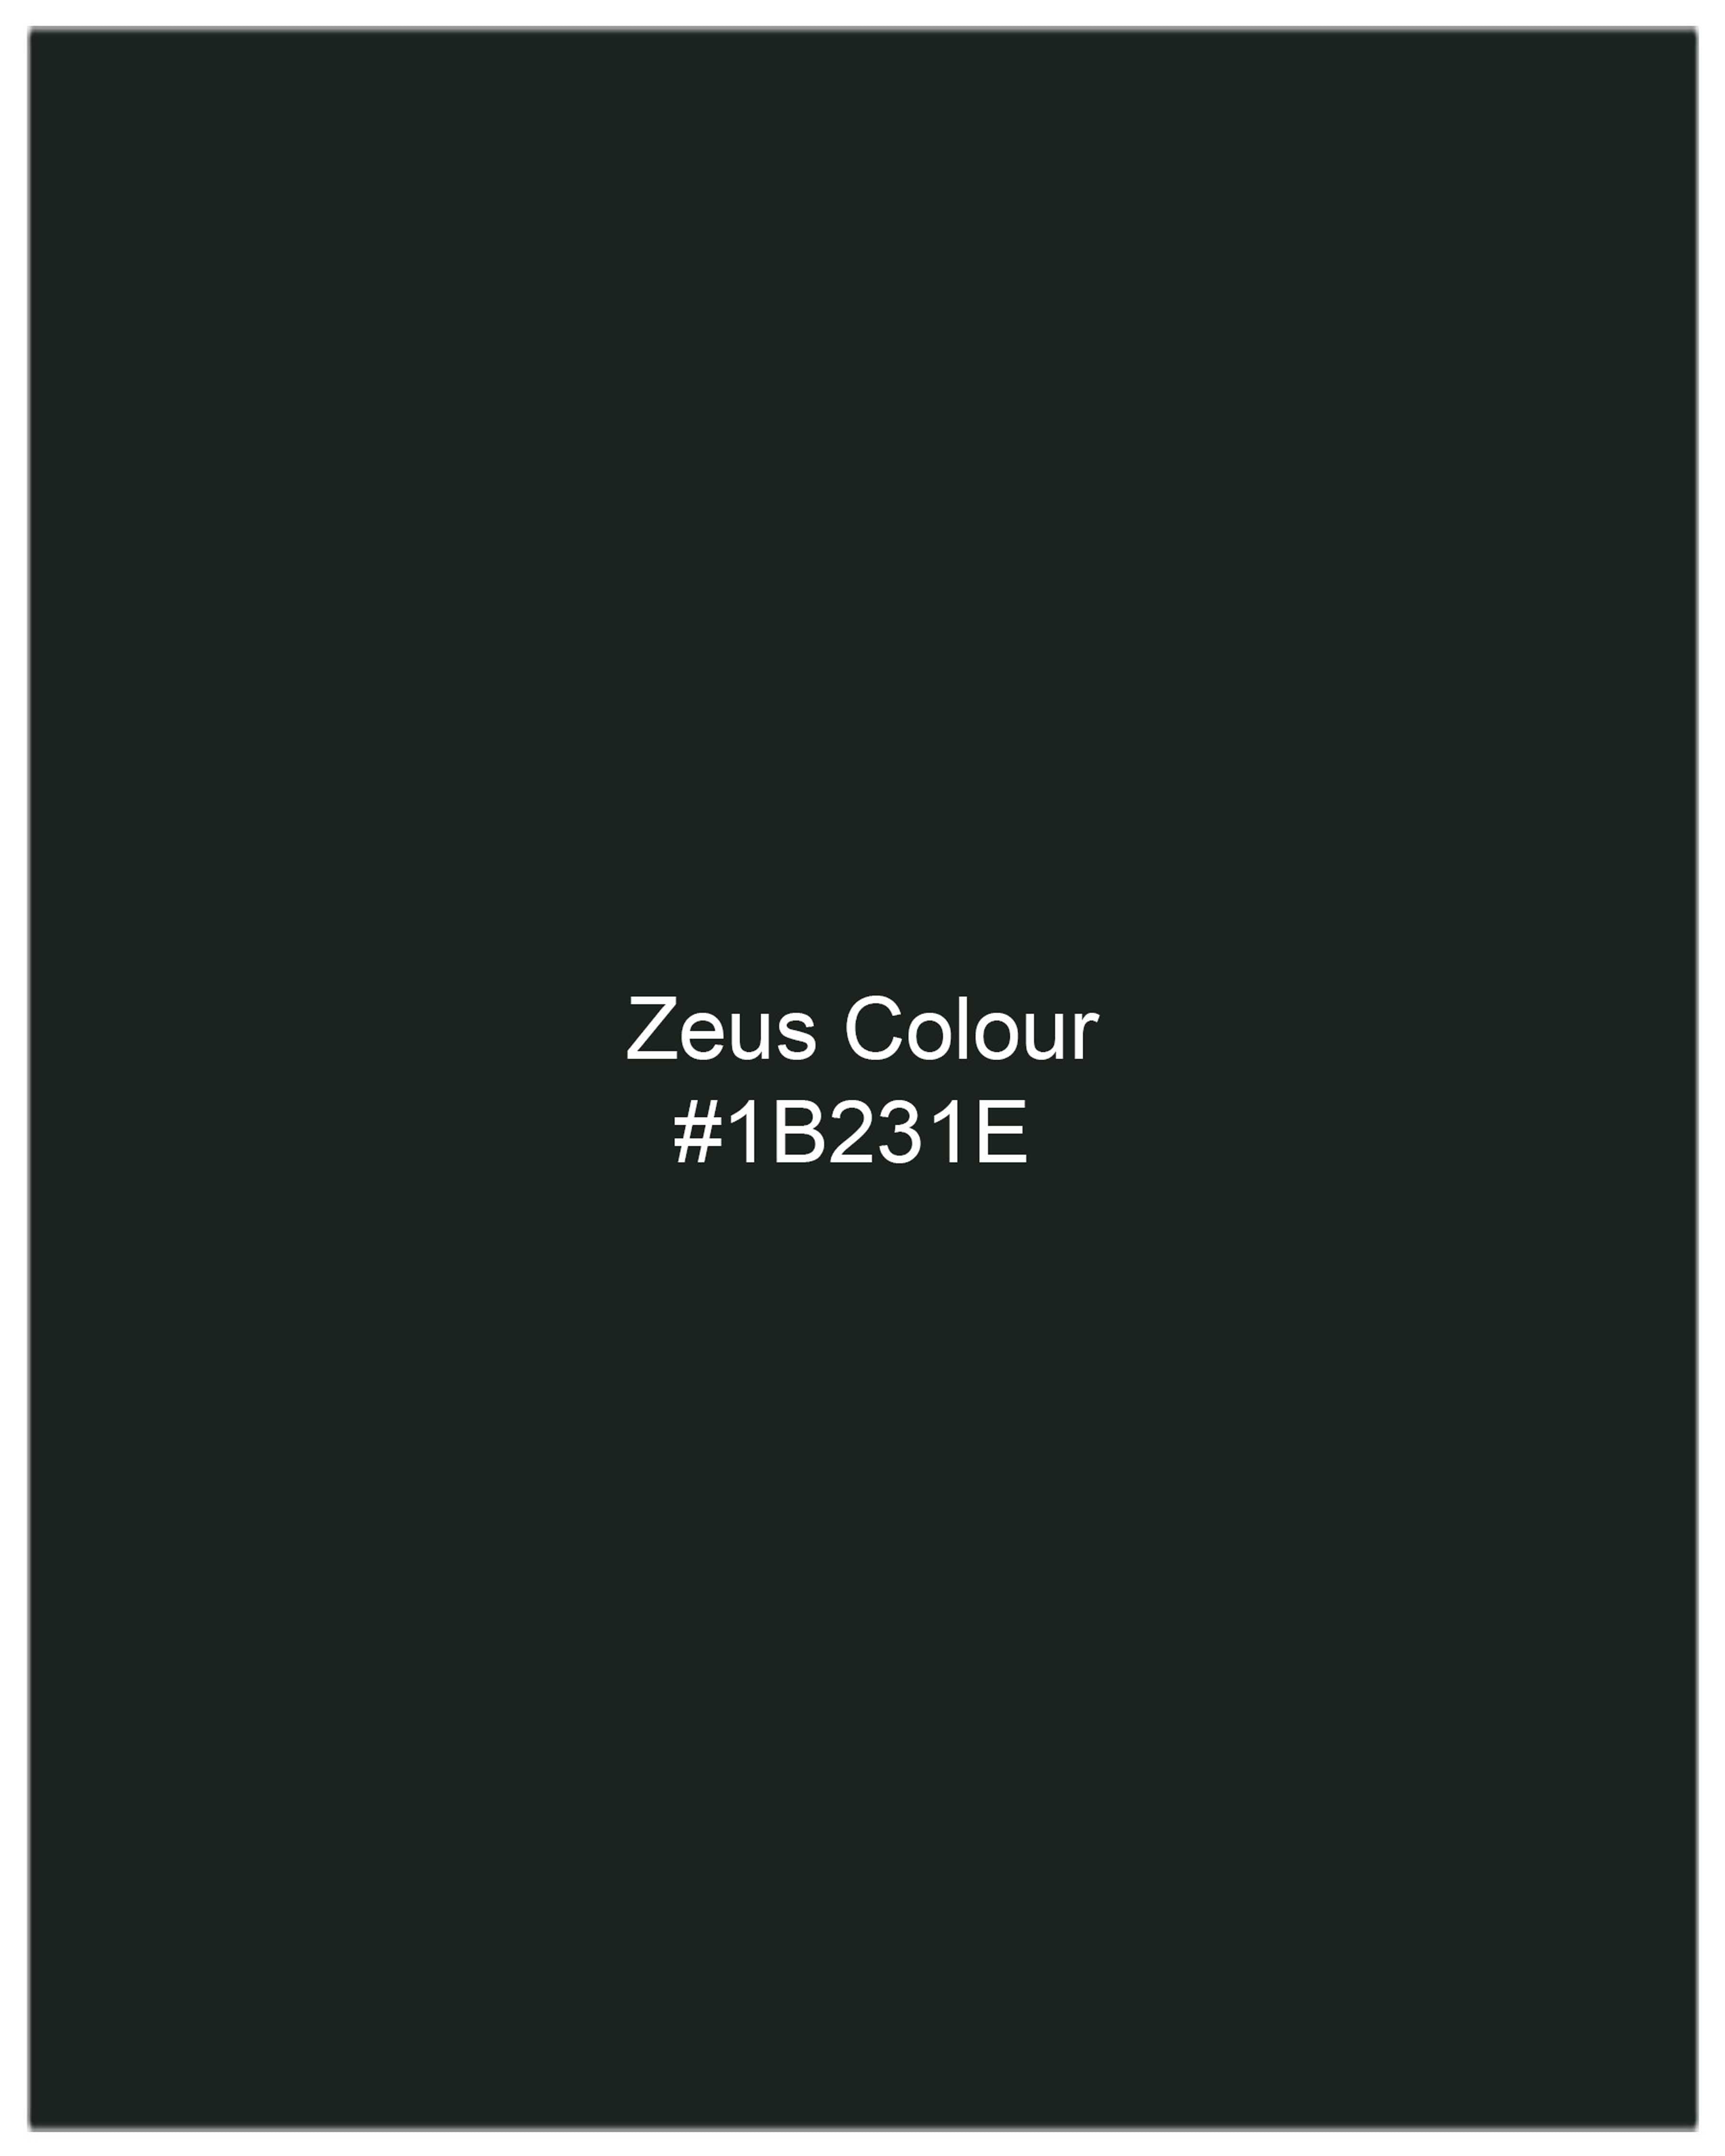 Zeus Dark Green Textured Waistcoat V2075-36, V2075-38, V2075-40, V2075-42, V2075-44, V2075-46, V2075-48, V2075-50, V2075-52, V2075-54, V2075-56, V2075-58, V2075-60